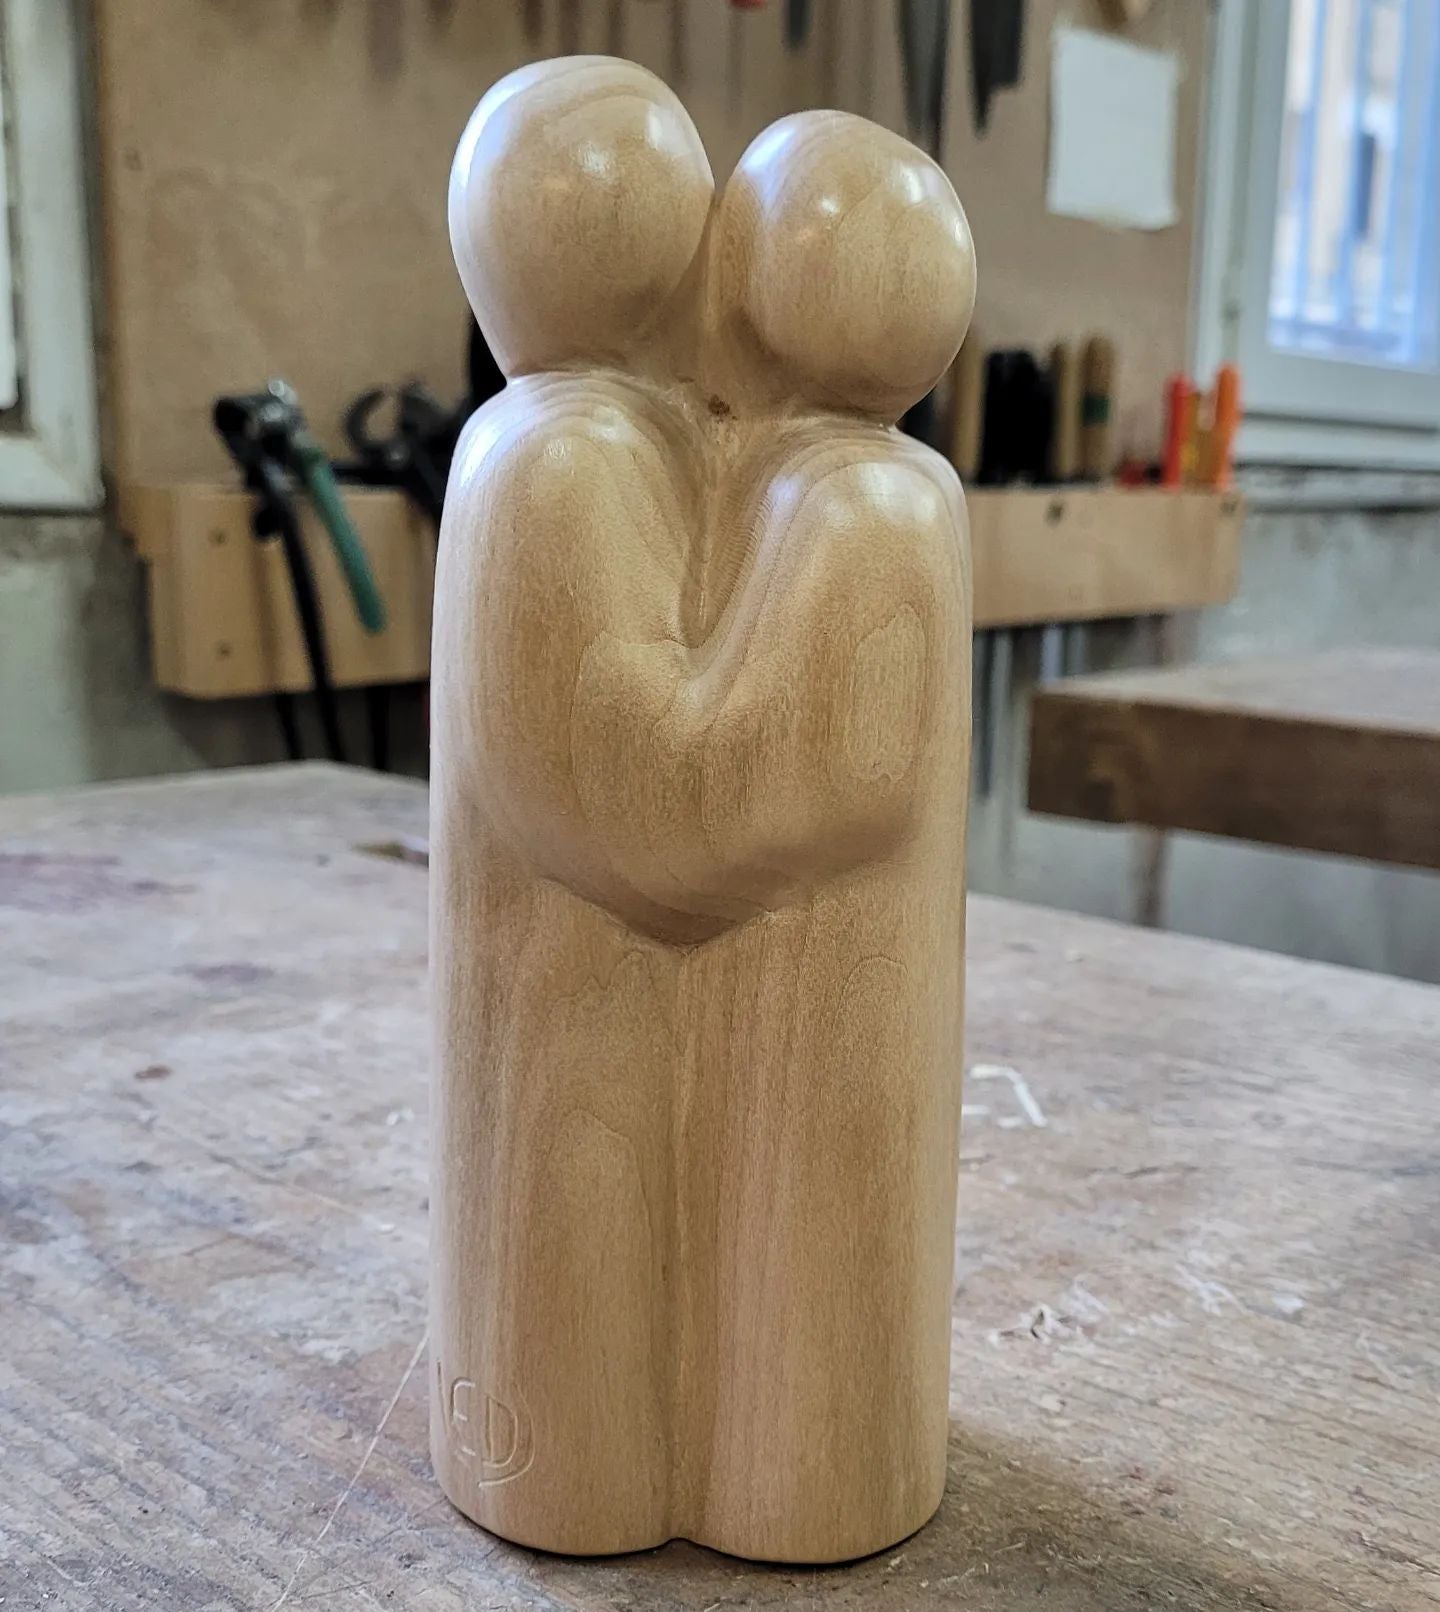 Les Amoureux, couple, sculpture contemporaine en bois de tilleul, Eveline David-Valette